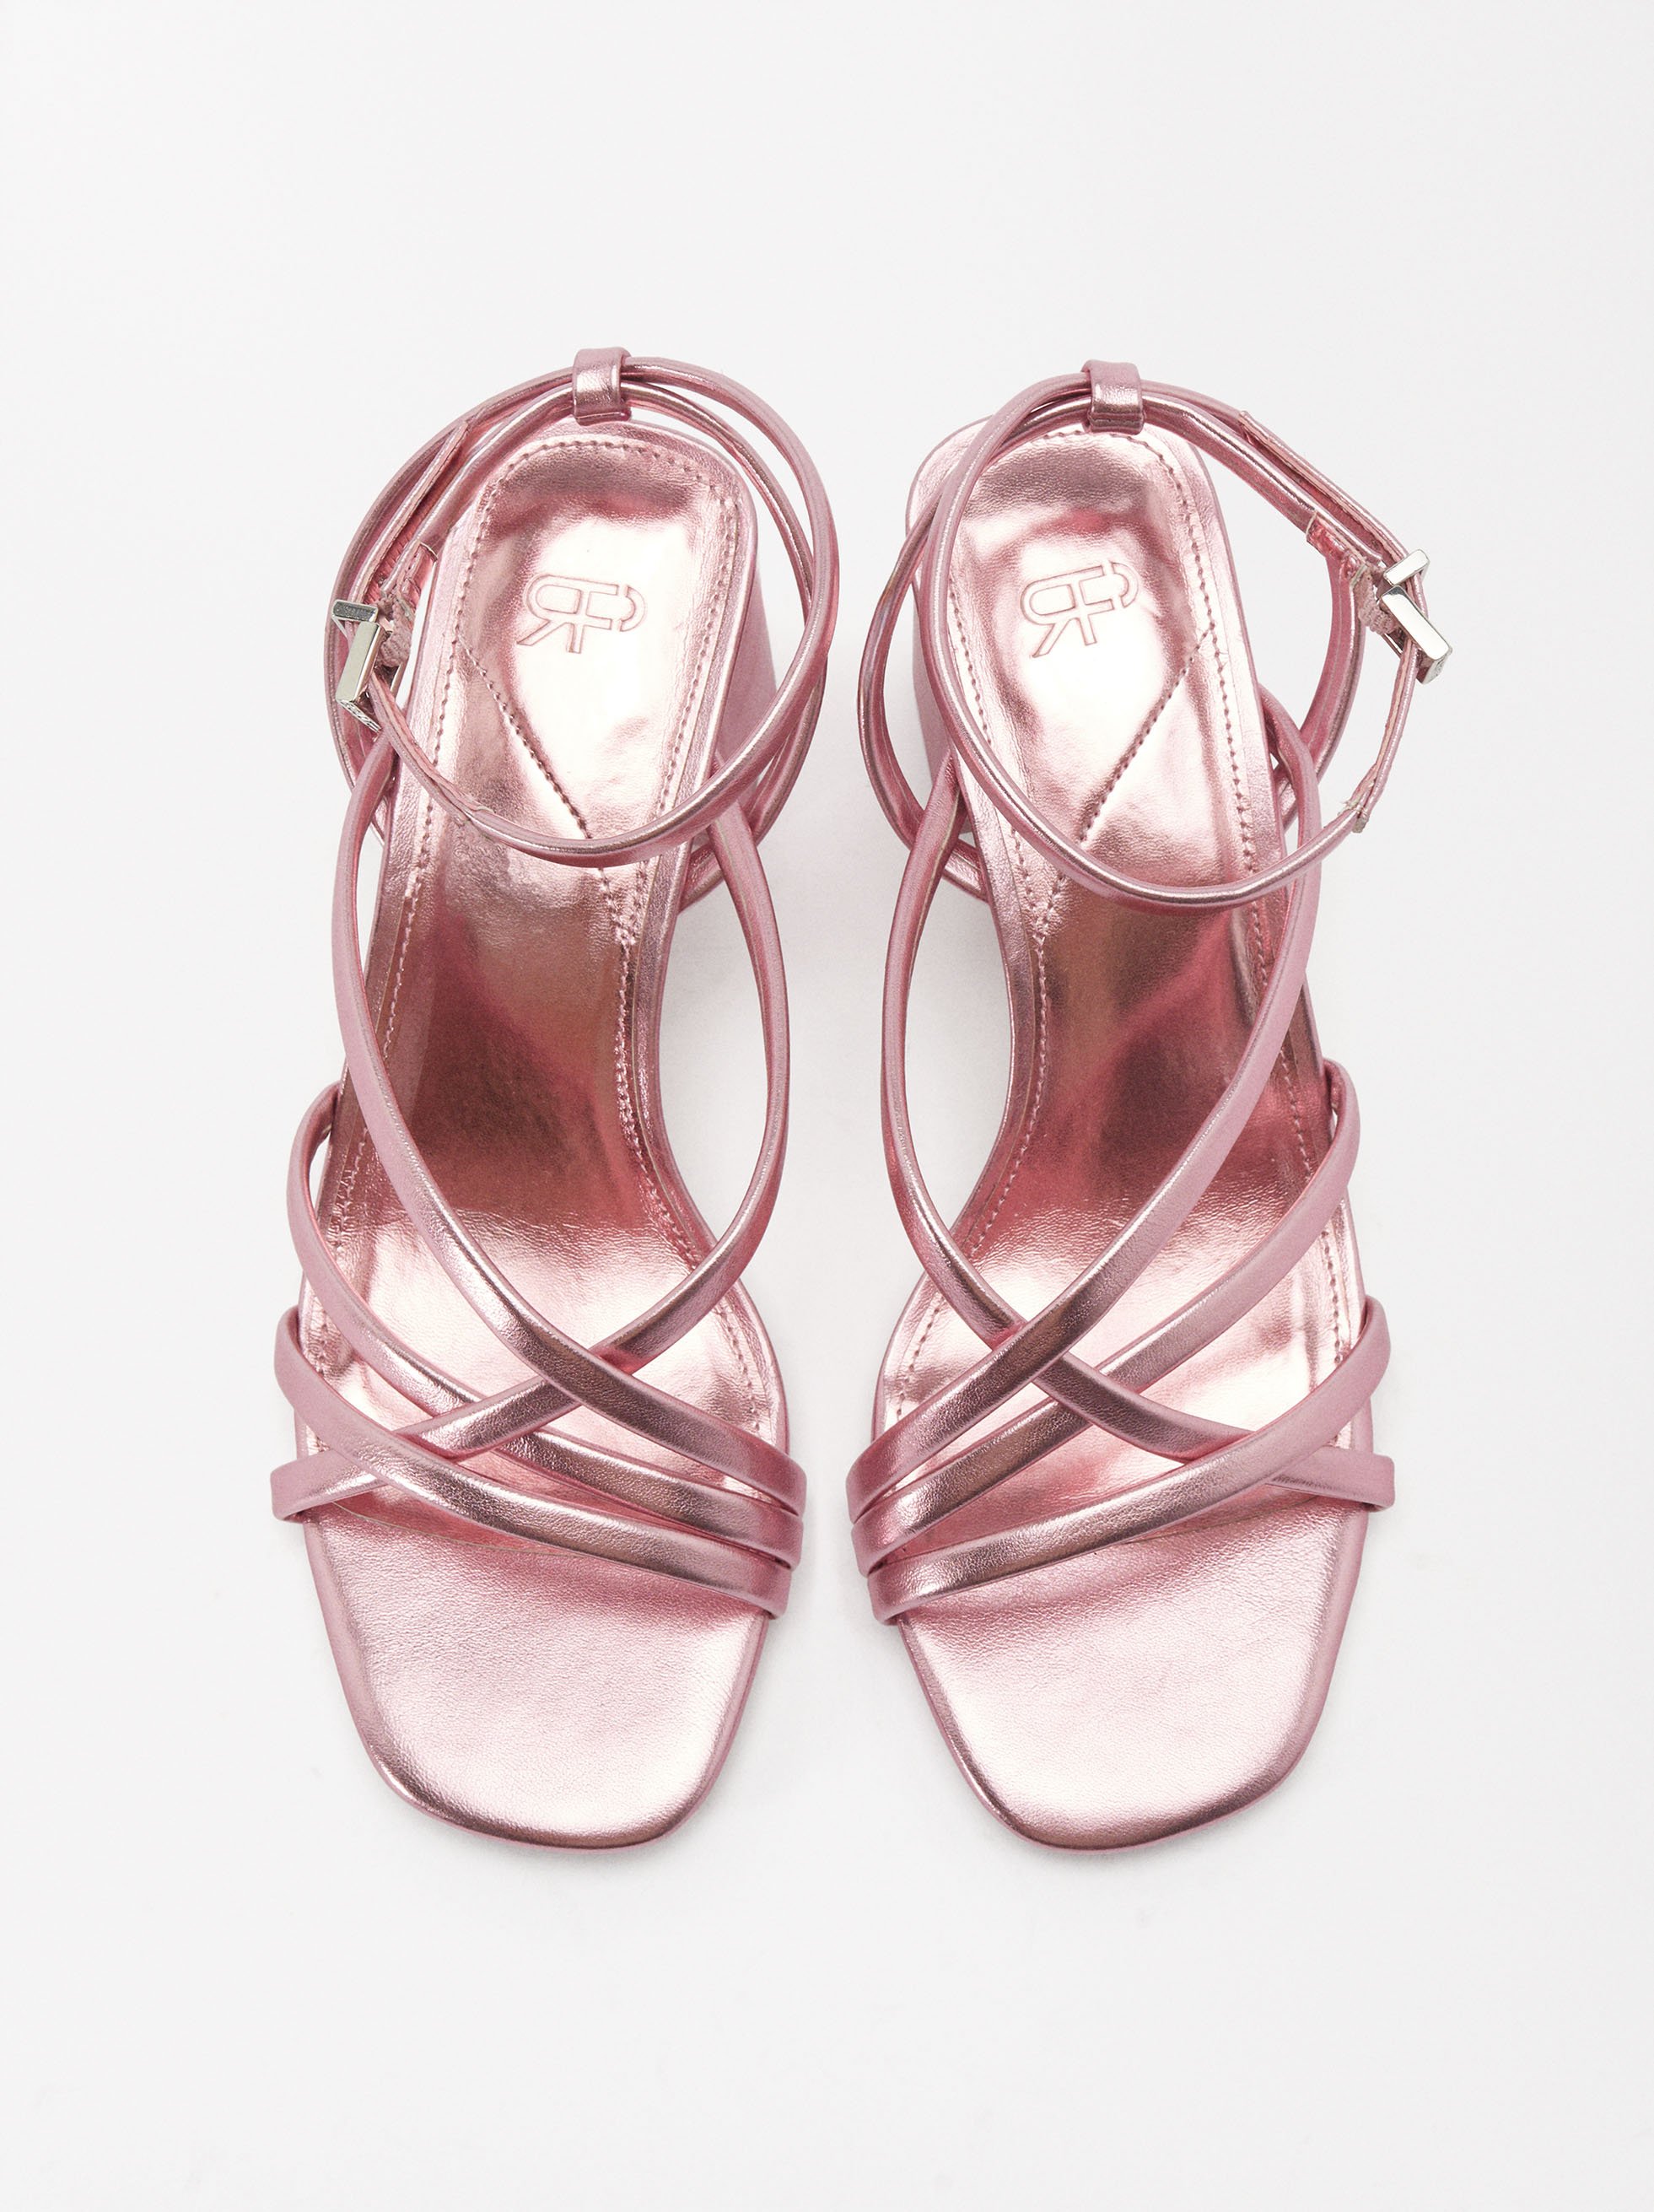 Online Exclusive - Metallic Strap High Heel Sandals image number 1.0